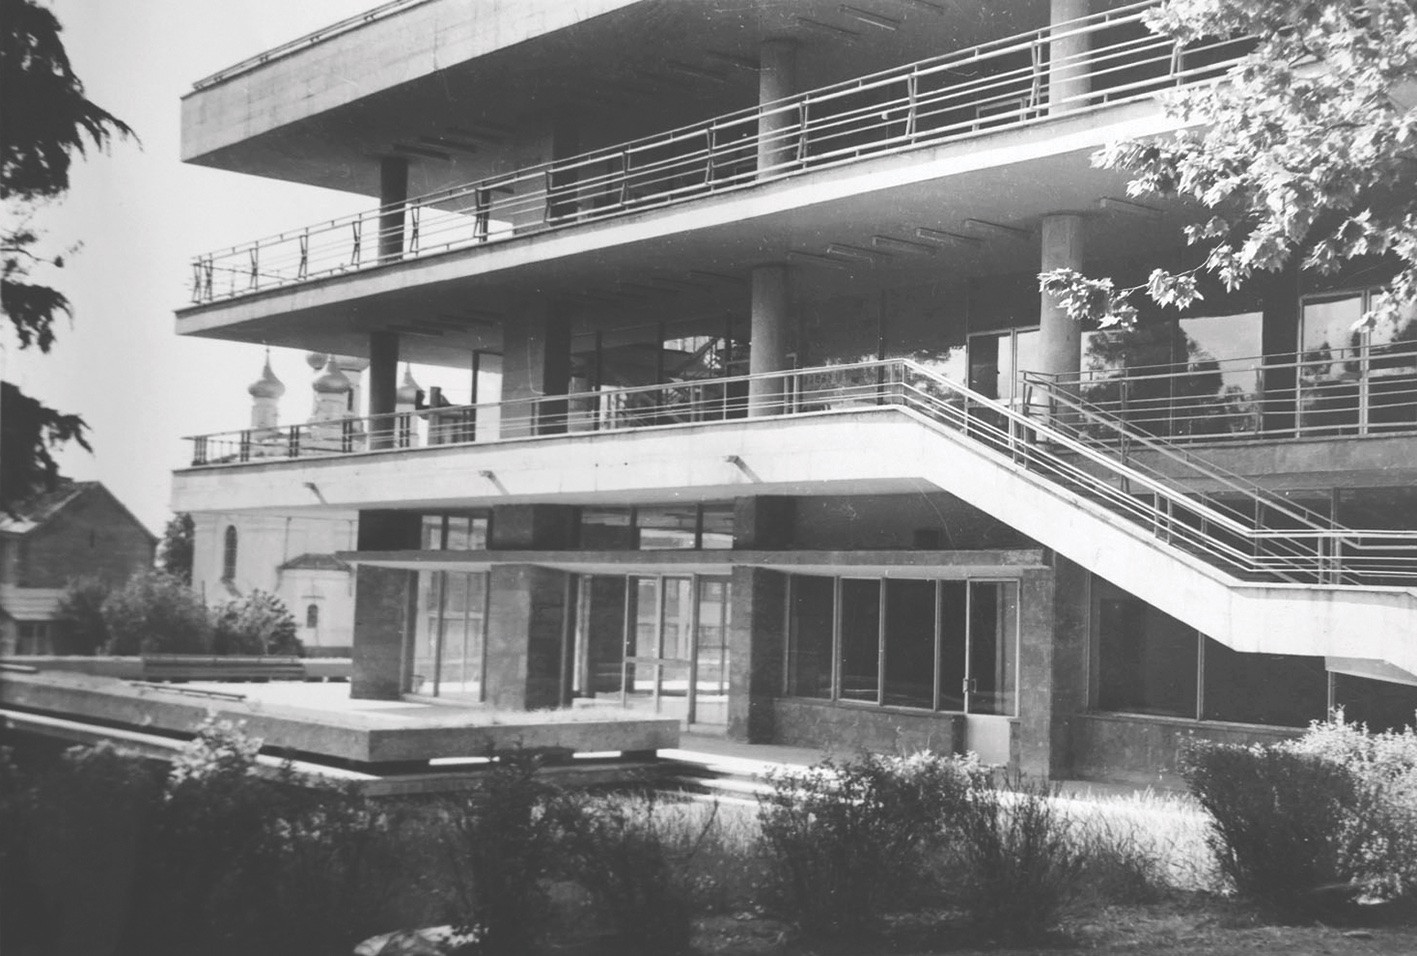 CHESS PALACE AND ALPINE CLUB Architects: Vladimer Aleksi-Meskhisvhili and Germane Ghudushauri, 1973 Photos from Germane Ghudushauri’s personal archive